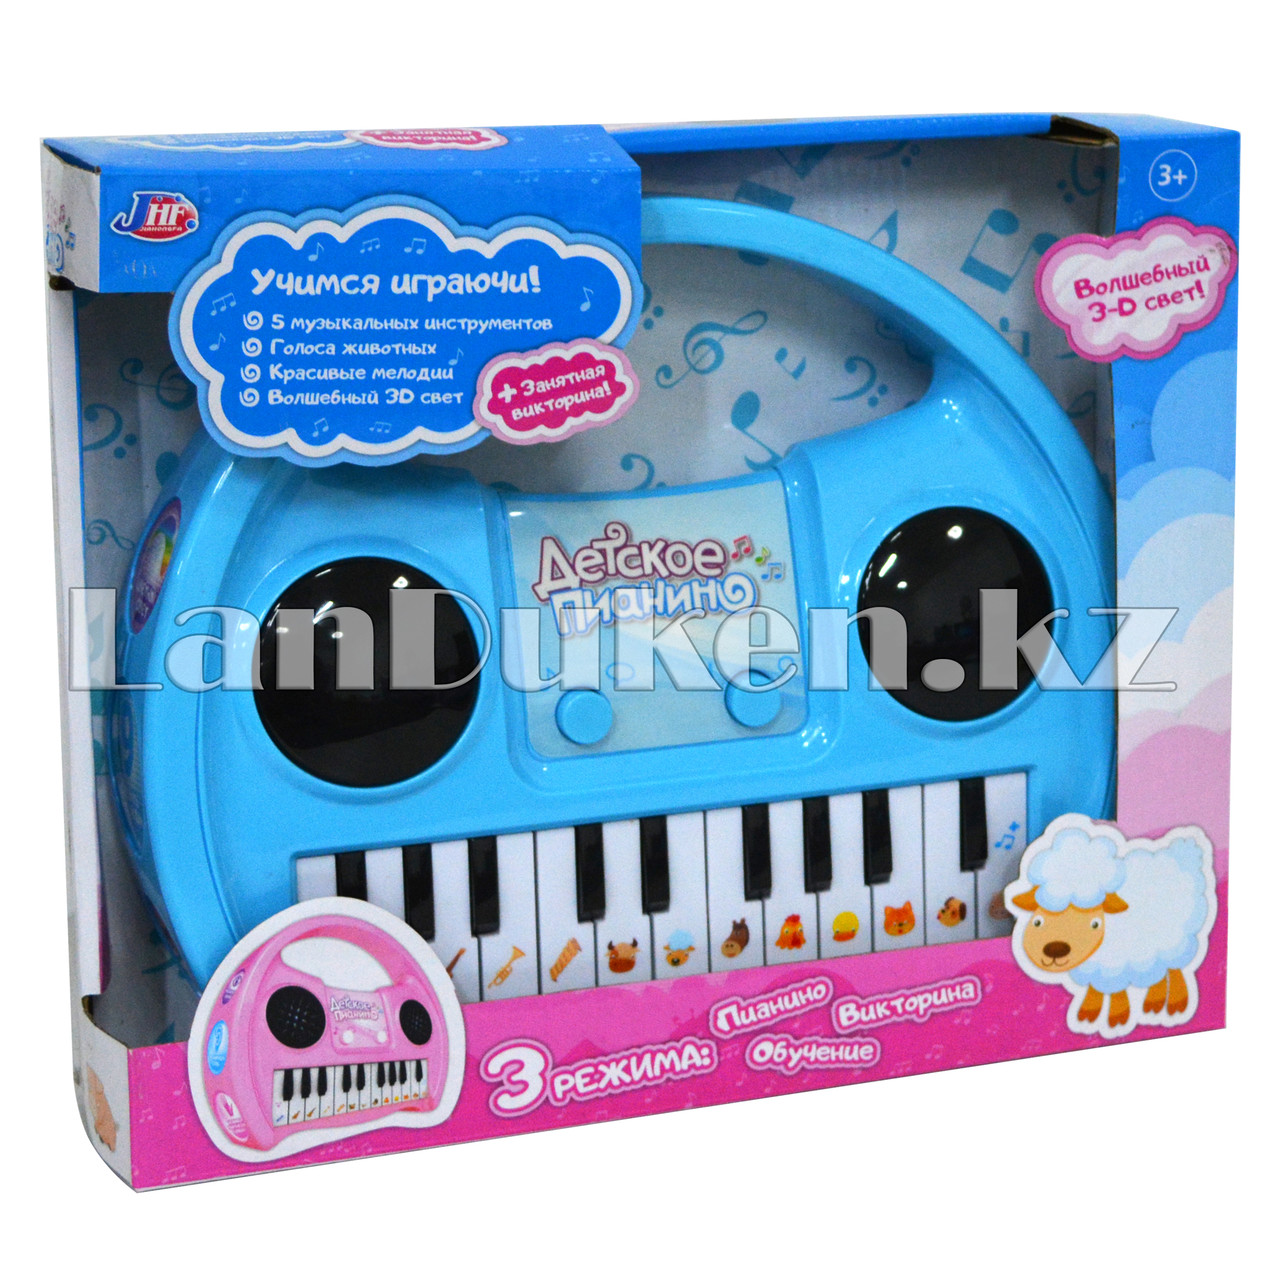 Детское интерактивное пианино с 3 режимами голубое 9016